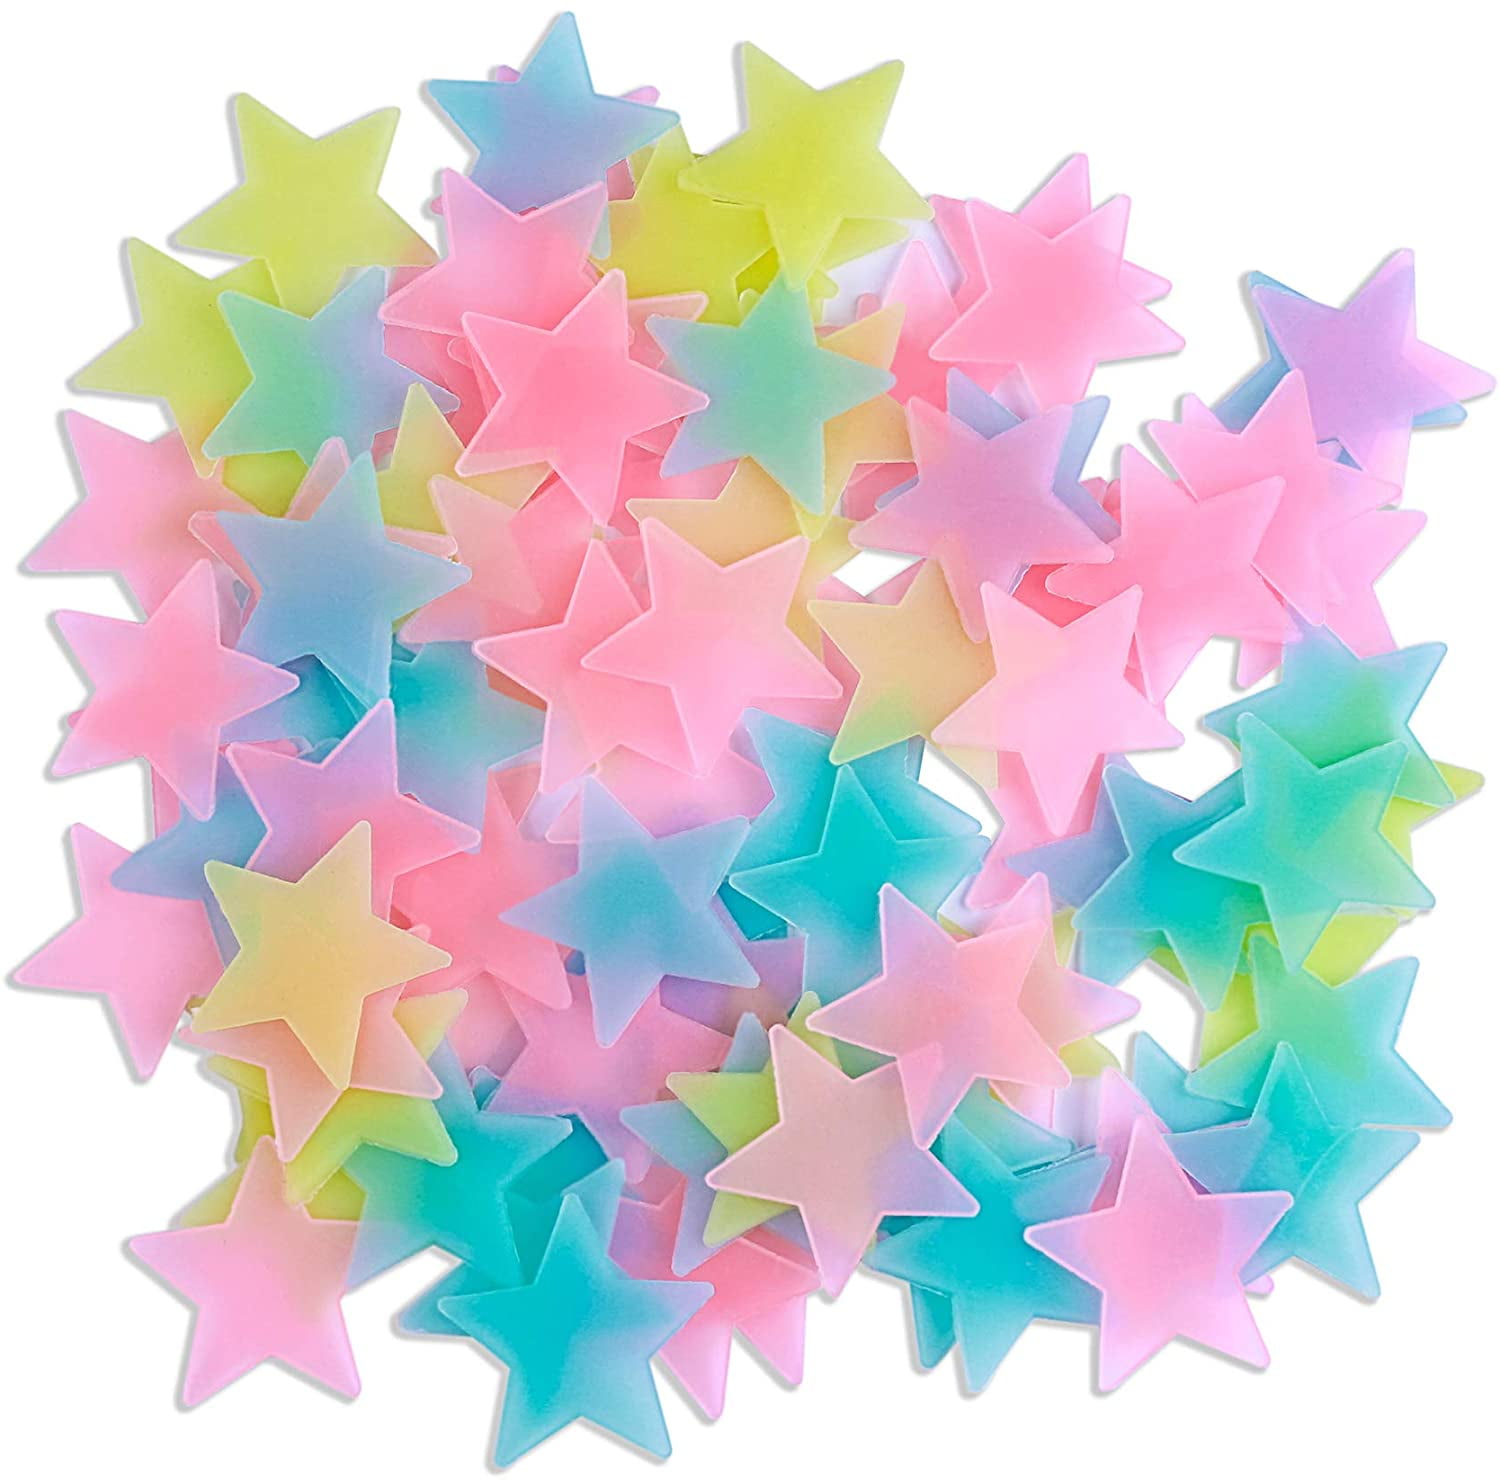 100 PCS 3D Luminous stars Wall Stickers Glow In The Dark Stars Sticker for Kids 